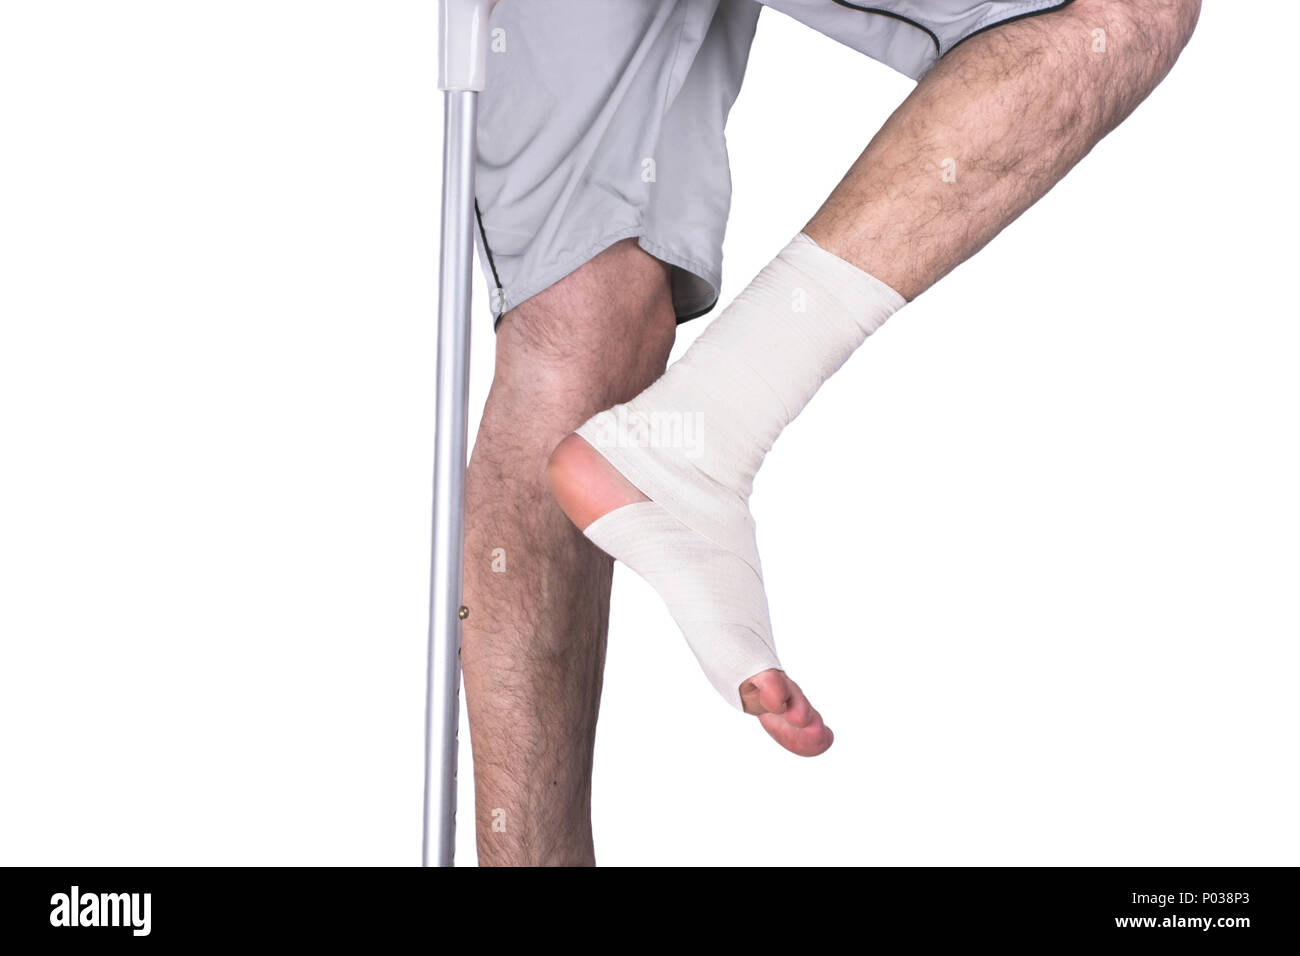 Перебинтованная нога мужская. Как бинтовать ноги перед операцией